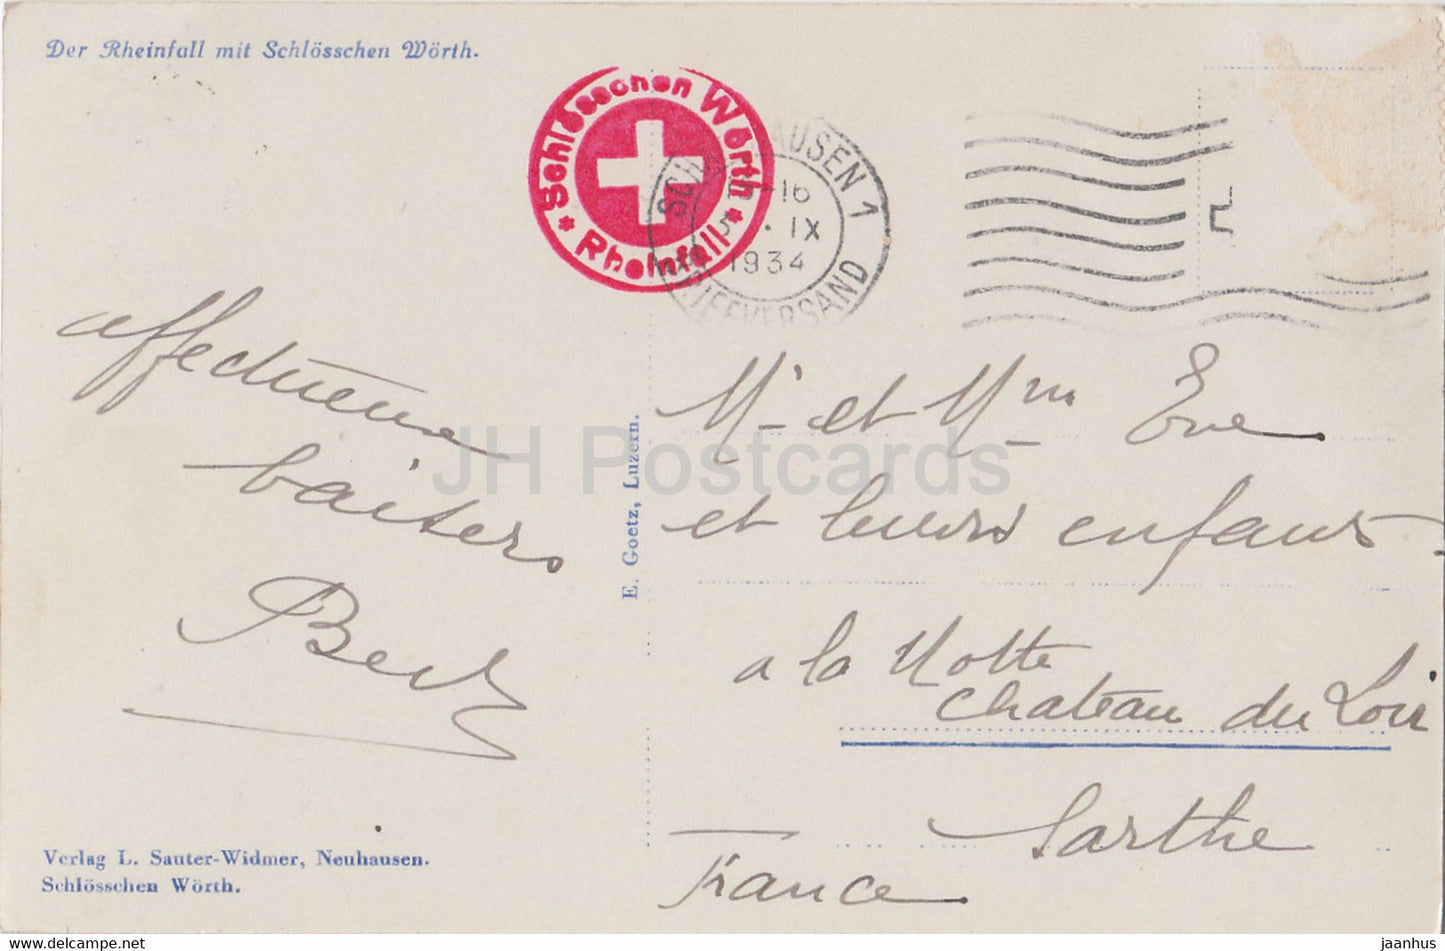 Der Rheinfall mit Schlosschen Worth - boat - old postcard - 1934 - Switzerland - used